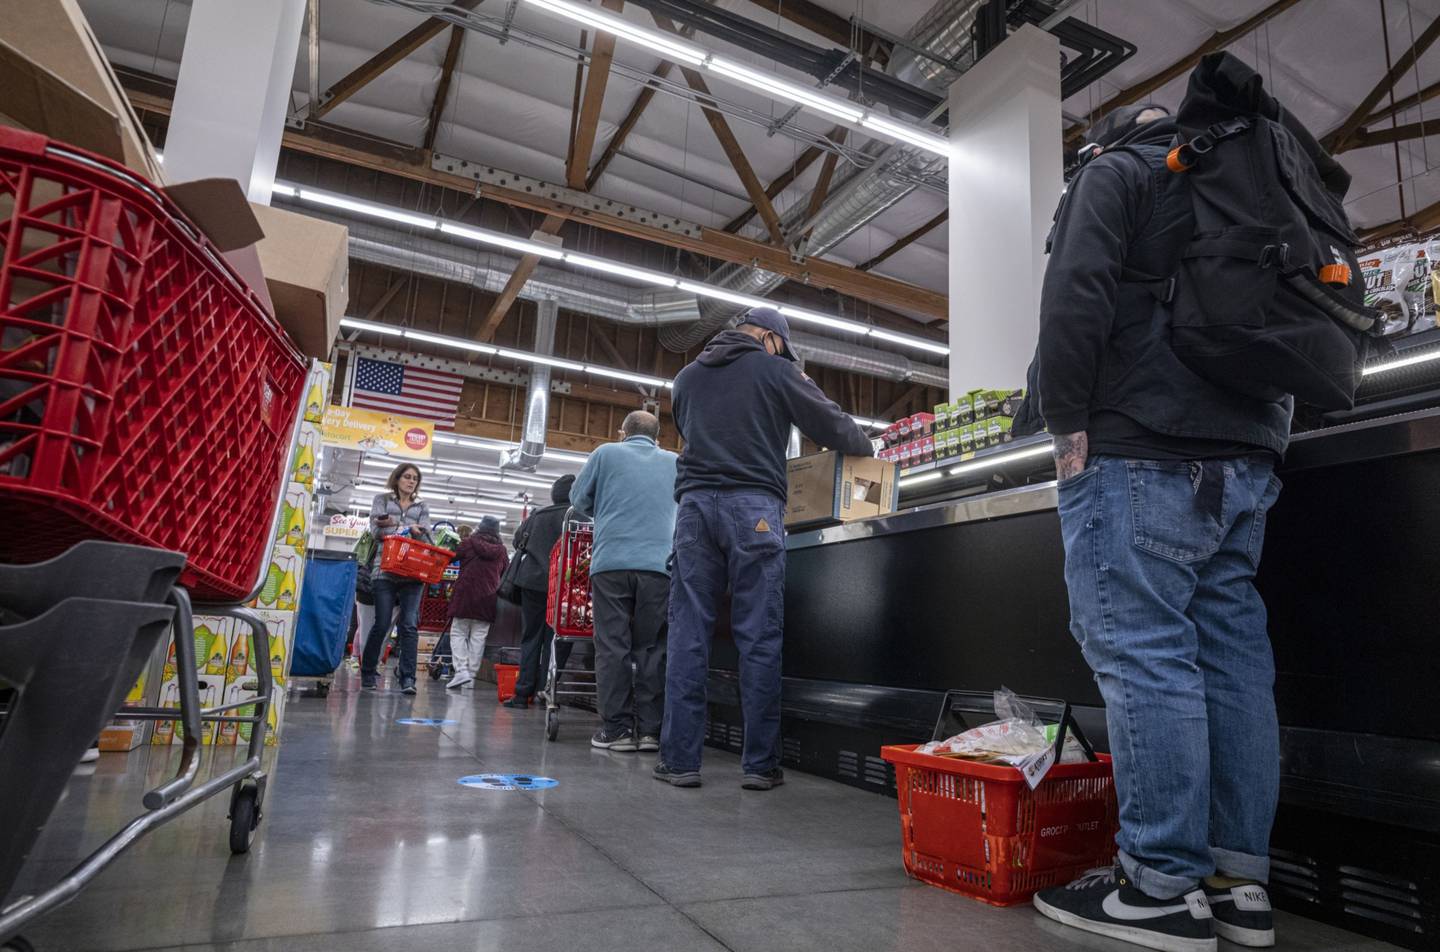 Compradores esperan en la cola para pagar dentro de una tienda de comestibles en San Francisco, California